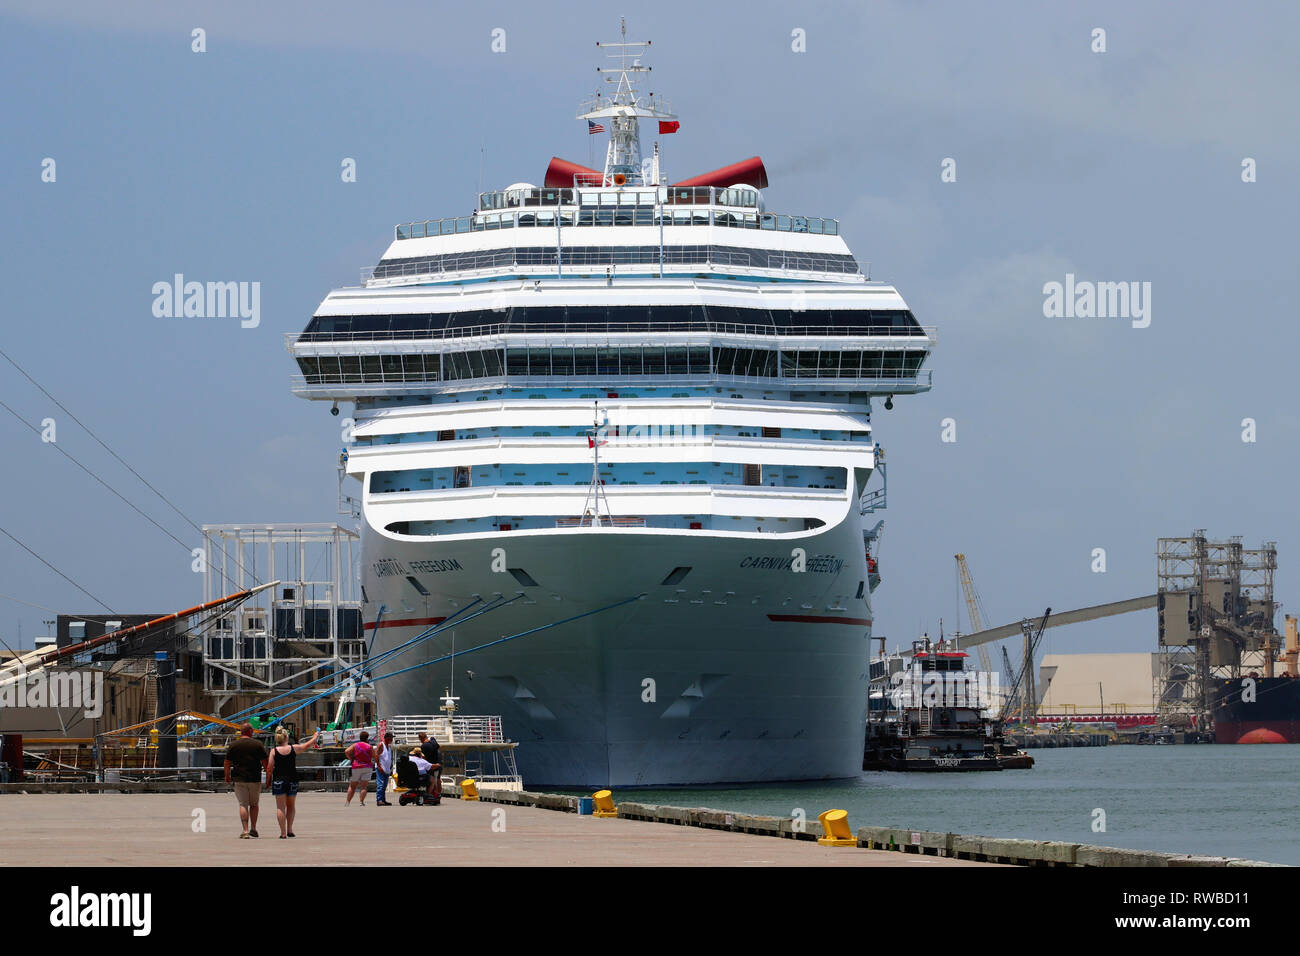 GALVESTON, Texas, USA - Juni 9, 2018: Carnival Freedom Cruise Schiff, vom Carnival Cruise Line betrieben, im Hafen von Galveston, Texas angedockt. Stockfoto